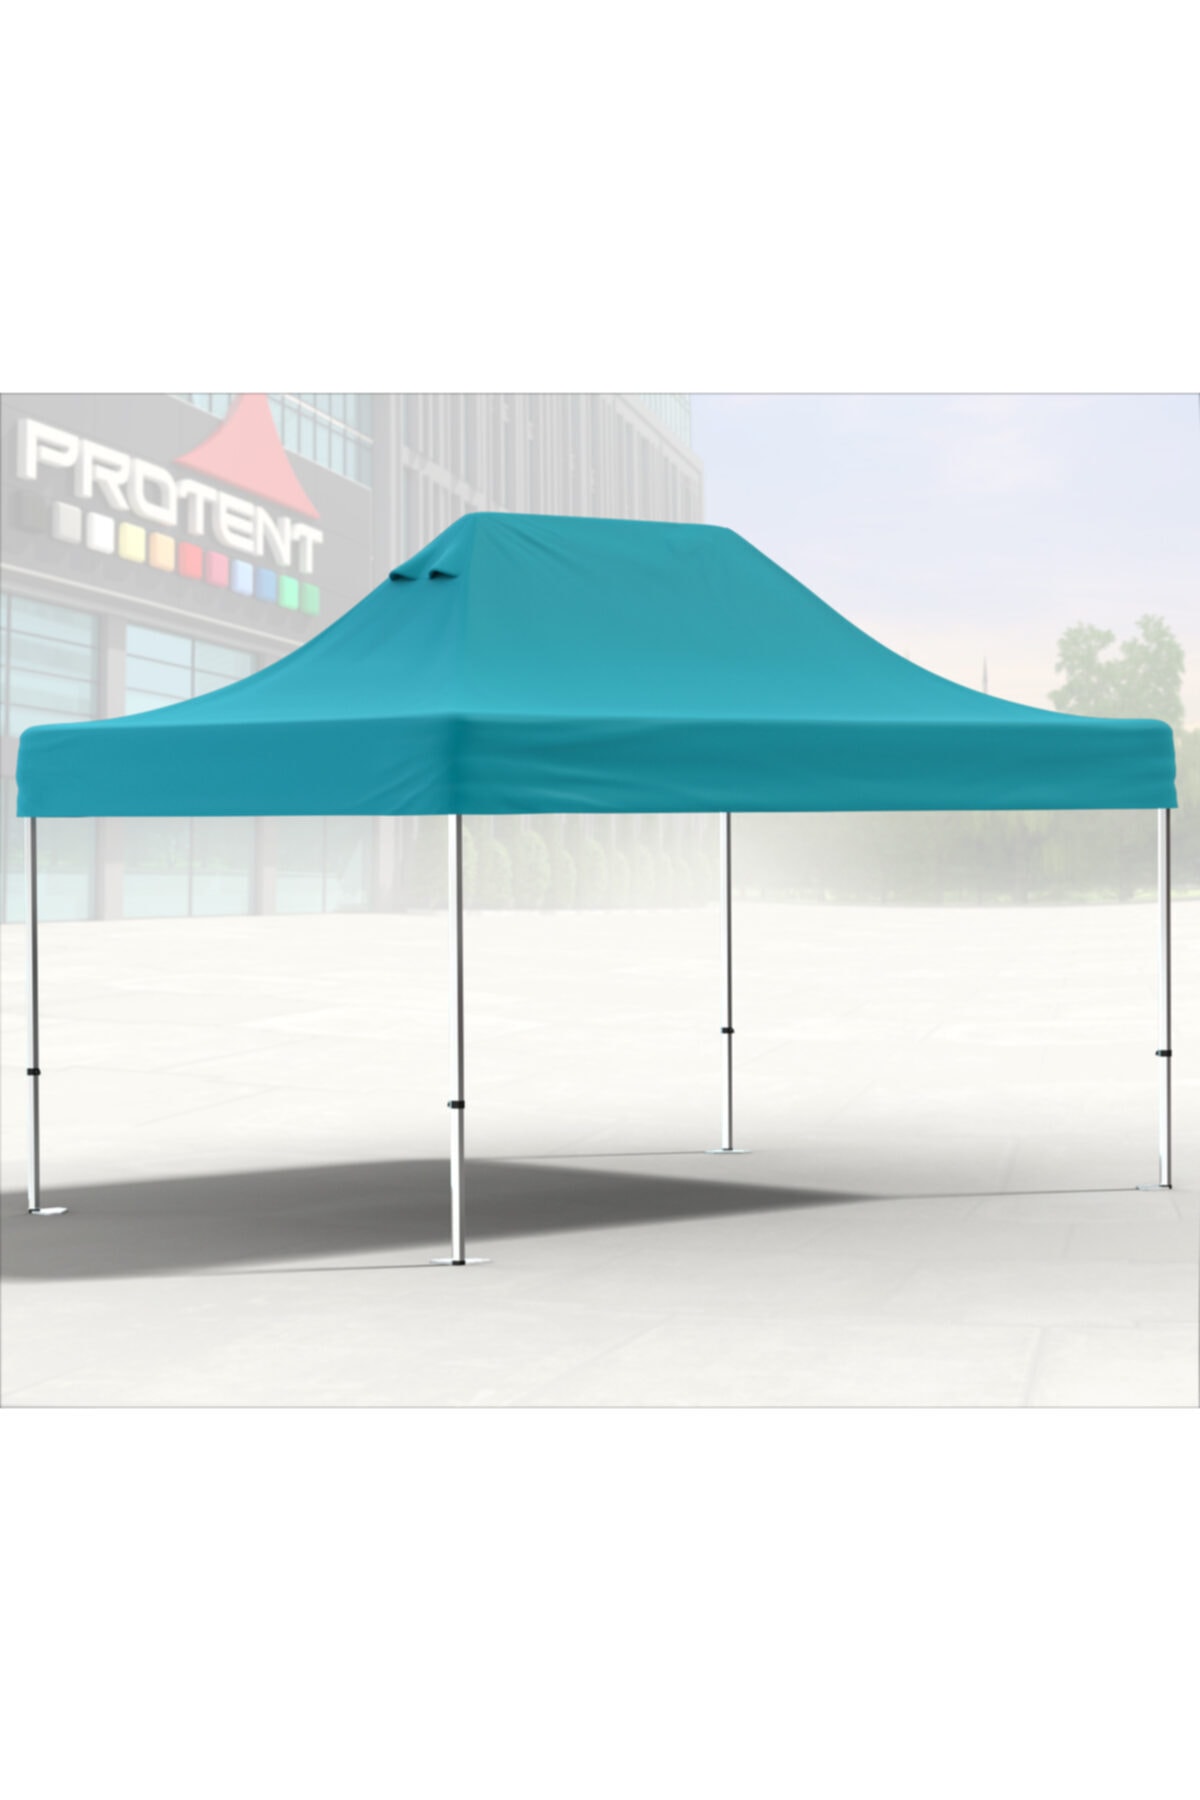 Protent Katlanır Protokol Organizasyon Çadırı 4x6 Portatif Taziye Fuar Çadırı Gazebo Gölgelik Tente 4x6m